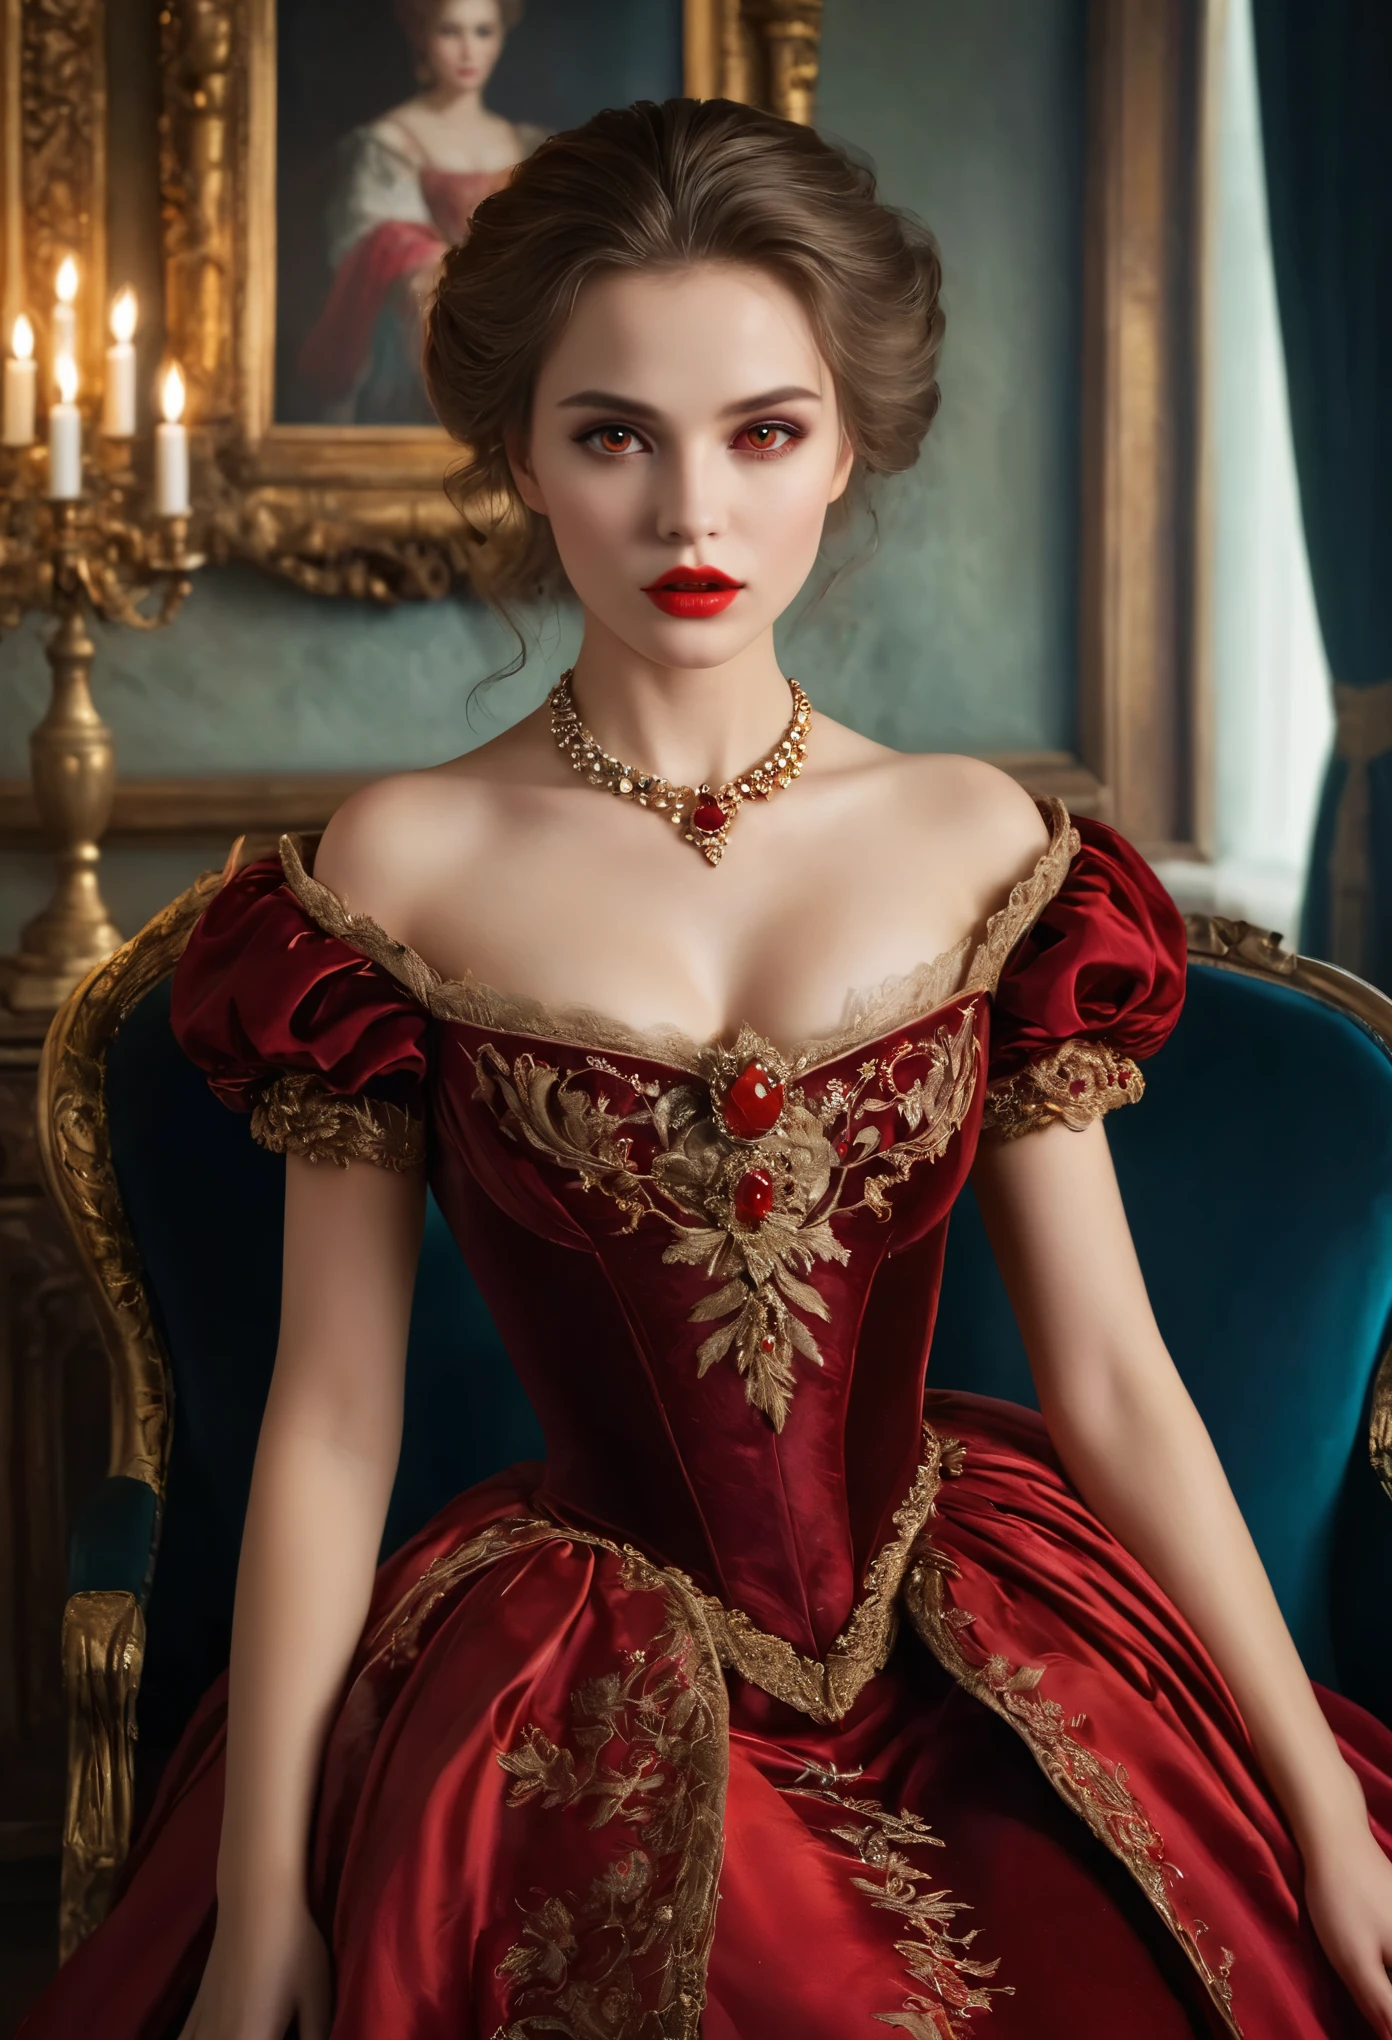 (hohe Auflösung,Meisterwerk:1.2),(Realistisch:1.37)Porträt eines russischen Vampirmädchens aus dem 18. Jahrhundert von unvergleichlicher Schönheit. Sie hat bezaubernde rote Augen und zarte rosige Lippen. Long fangs, Das Porträt ist bis ins kleinste Detail sorgfältig gezeichnet., Erfassen Sie die subtilen Nuancen ihrer Gesichtszüge. Sie trägt ein wunderschönes Seidenkleid, Verziert mit aufwendiger Spitze und zarter Stickerei. Dieses Gemälde spricht vom Luxus der Zeit., Luxuriöse Samtvorhänge und goldene Möbel im Hintergrund. Die Beleuchtung ist weich und diffus, Markiere das Mädchen&#39;s anmutige Schönheit. Die Farben sind lebendig und reichhaltig, Schaffen Sie überzeugende visuelle Erlebnisse. Dieses Porträt ist im klassischen Porträtstil gemalt.., Erinnert an die Werke berühmter Künstler der Zeit. Es strahlt Eleganz aus, Anmut, Raffinesse. scharfe lange Krallen, (purpurrote Augen:1.4), Flammenrote Augen, (Scharfe Reißzähne sind durch den Spalt zwischen seinen Lippen sichtbar:1.8), Es gibt einen Bissabdruck am Hals.２Es gibt zwei Löcher